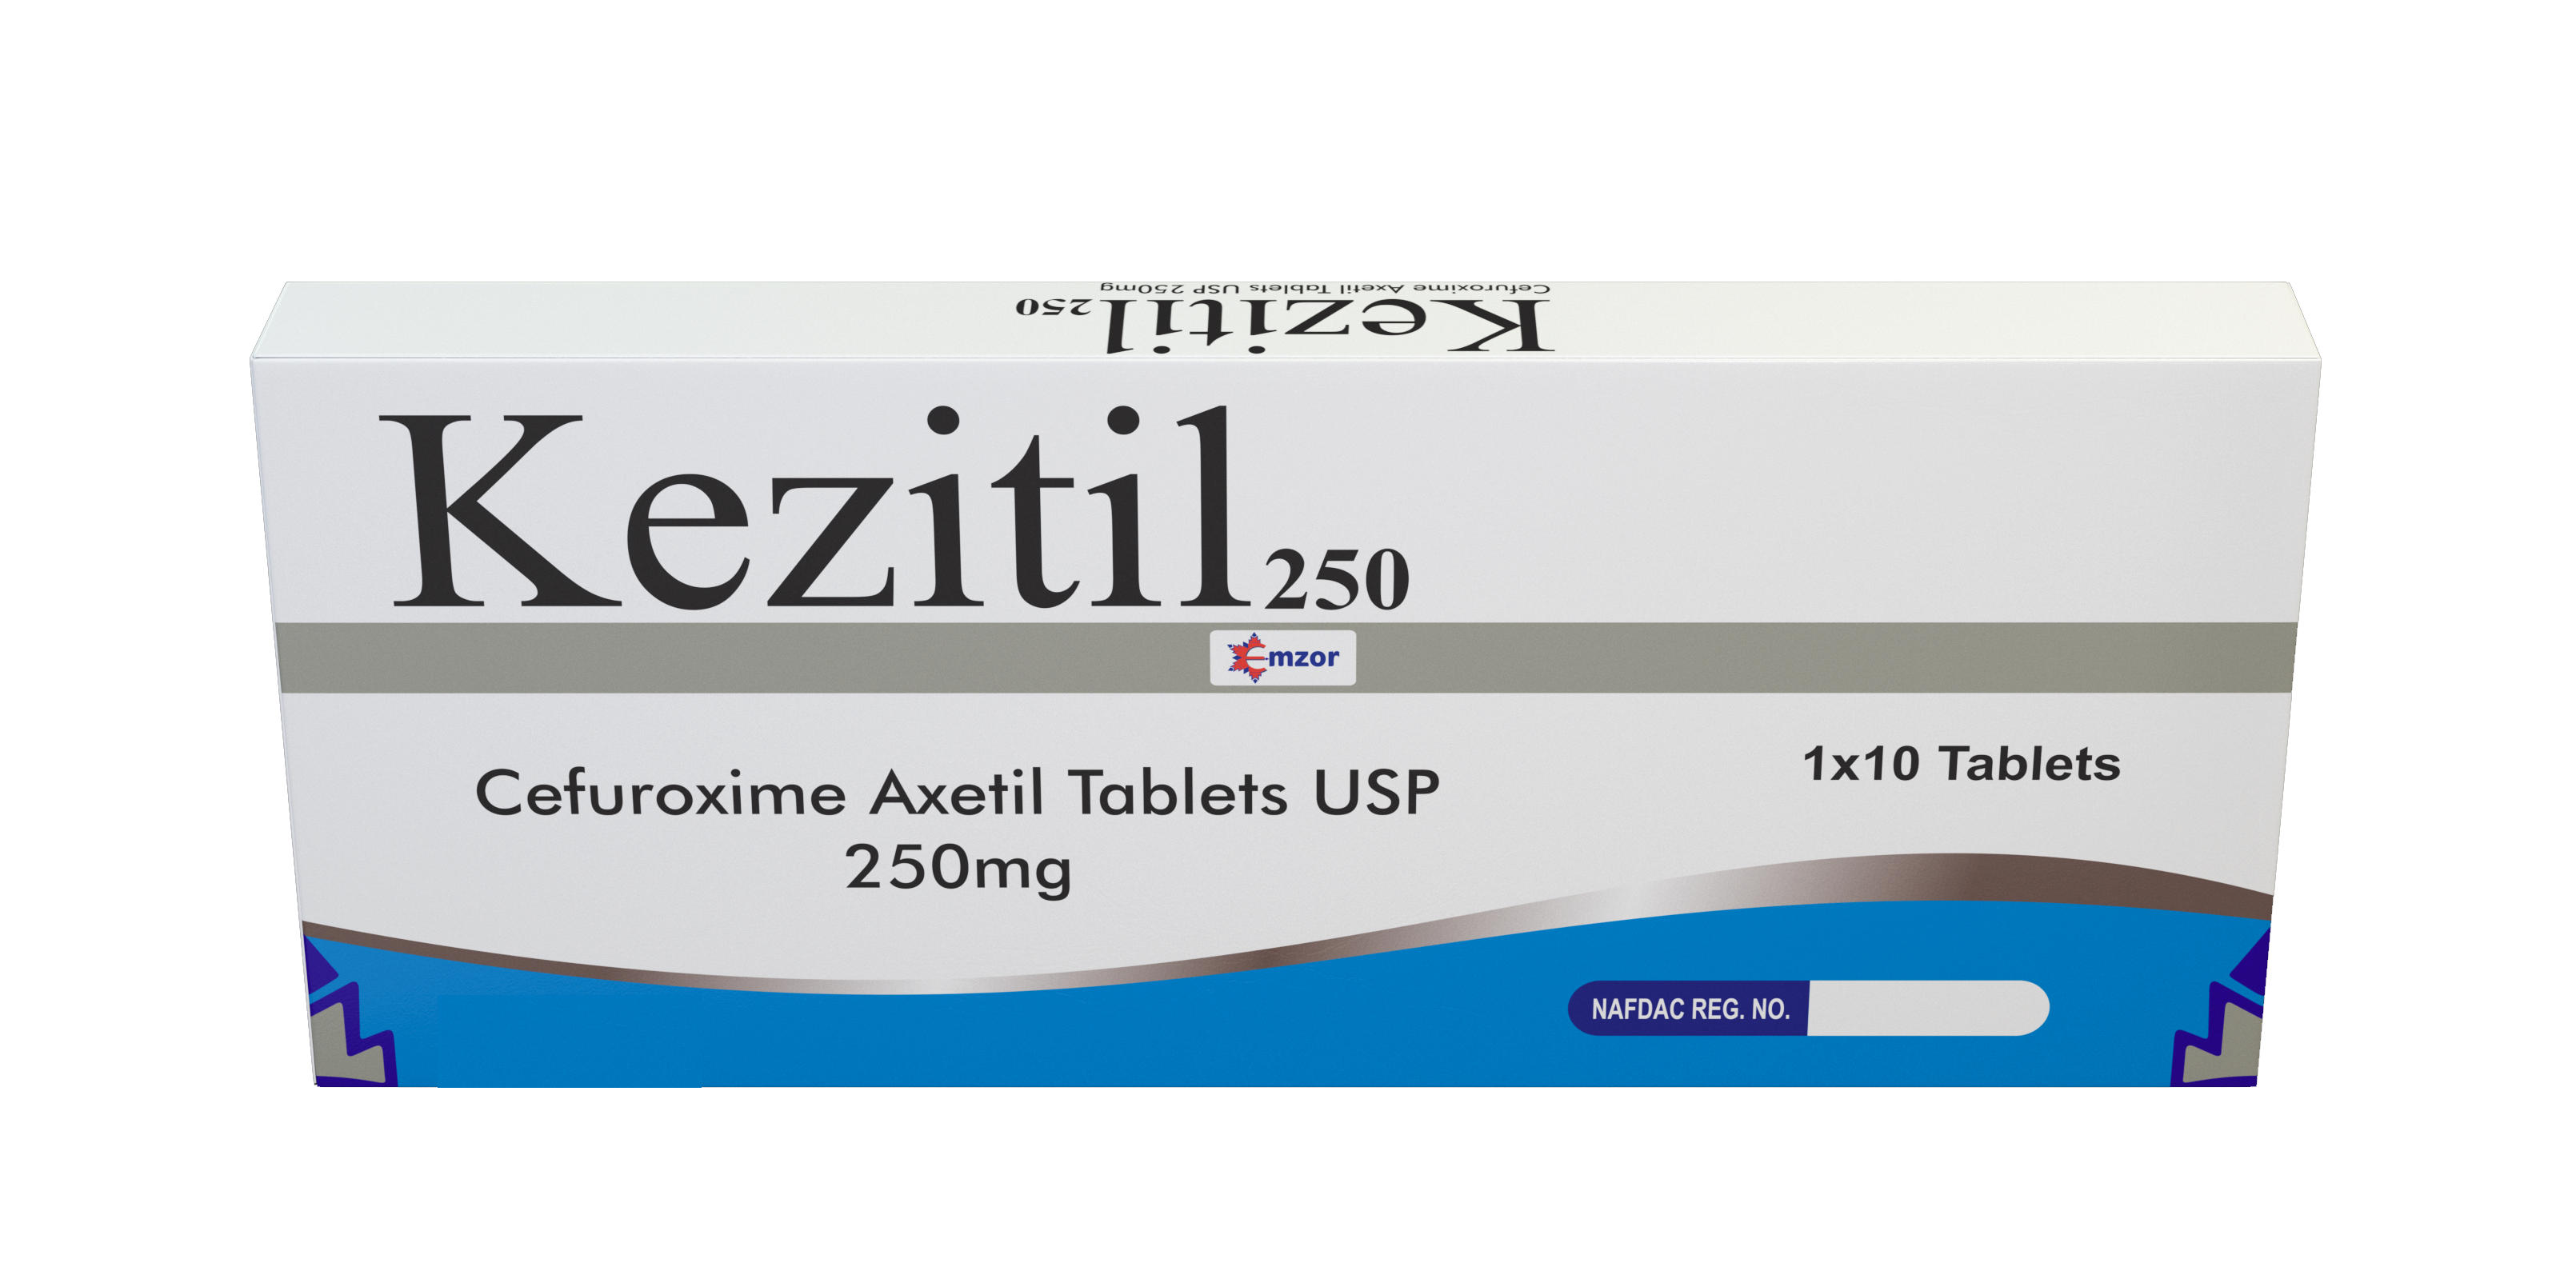 Kezitil Tablets 250mg 1*10  main image